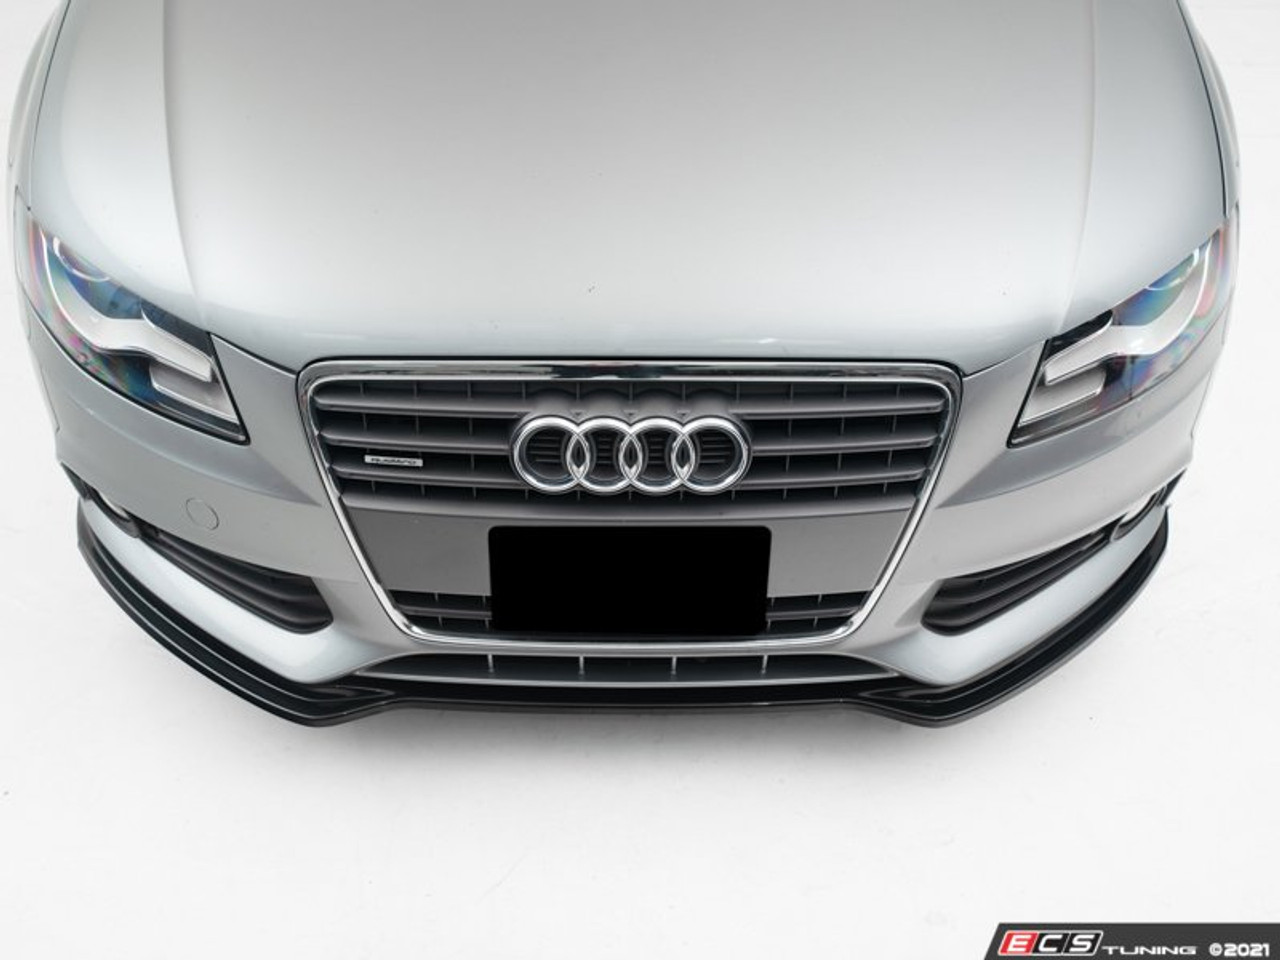 mytuning, IN-Tuning Cup-Spoilerlippe glänzend schwarz für Audi A4 B8  Facelift ohne S-Line